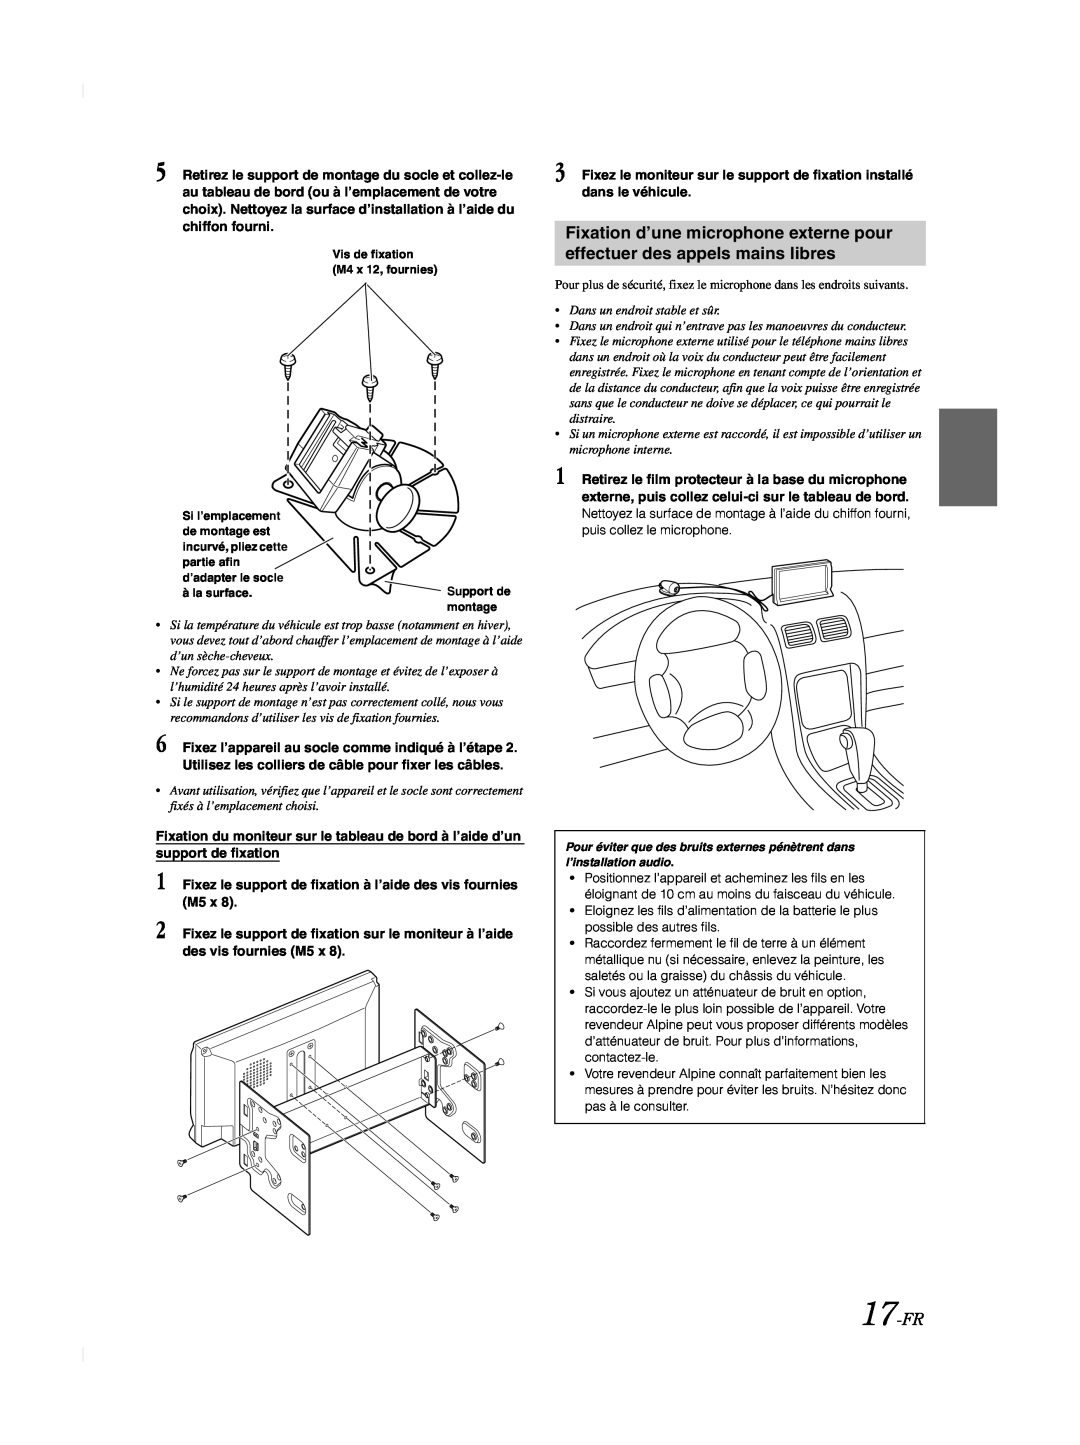 Alpine TME-M740BT owner manual 17-FR, Fixez le support de fixation à l’aide des vis fournies M5 